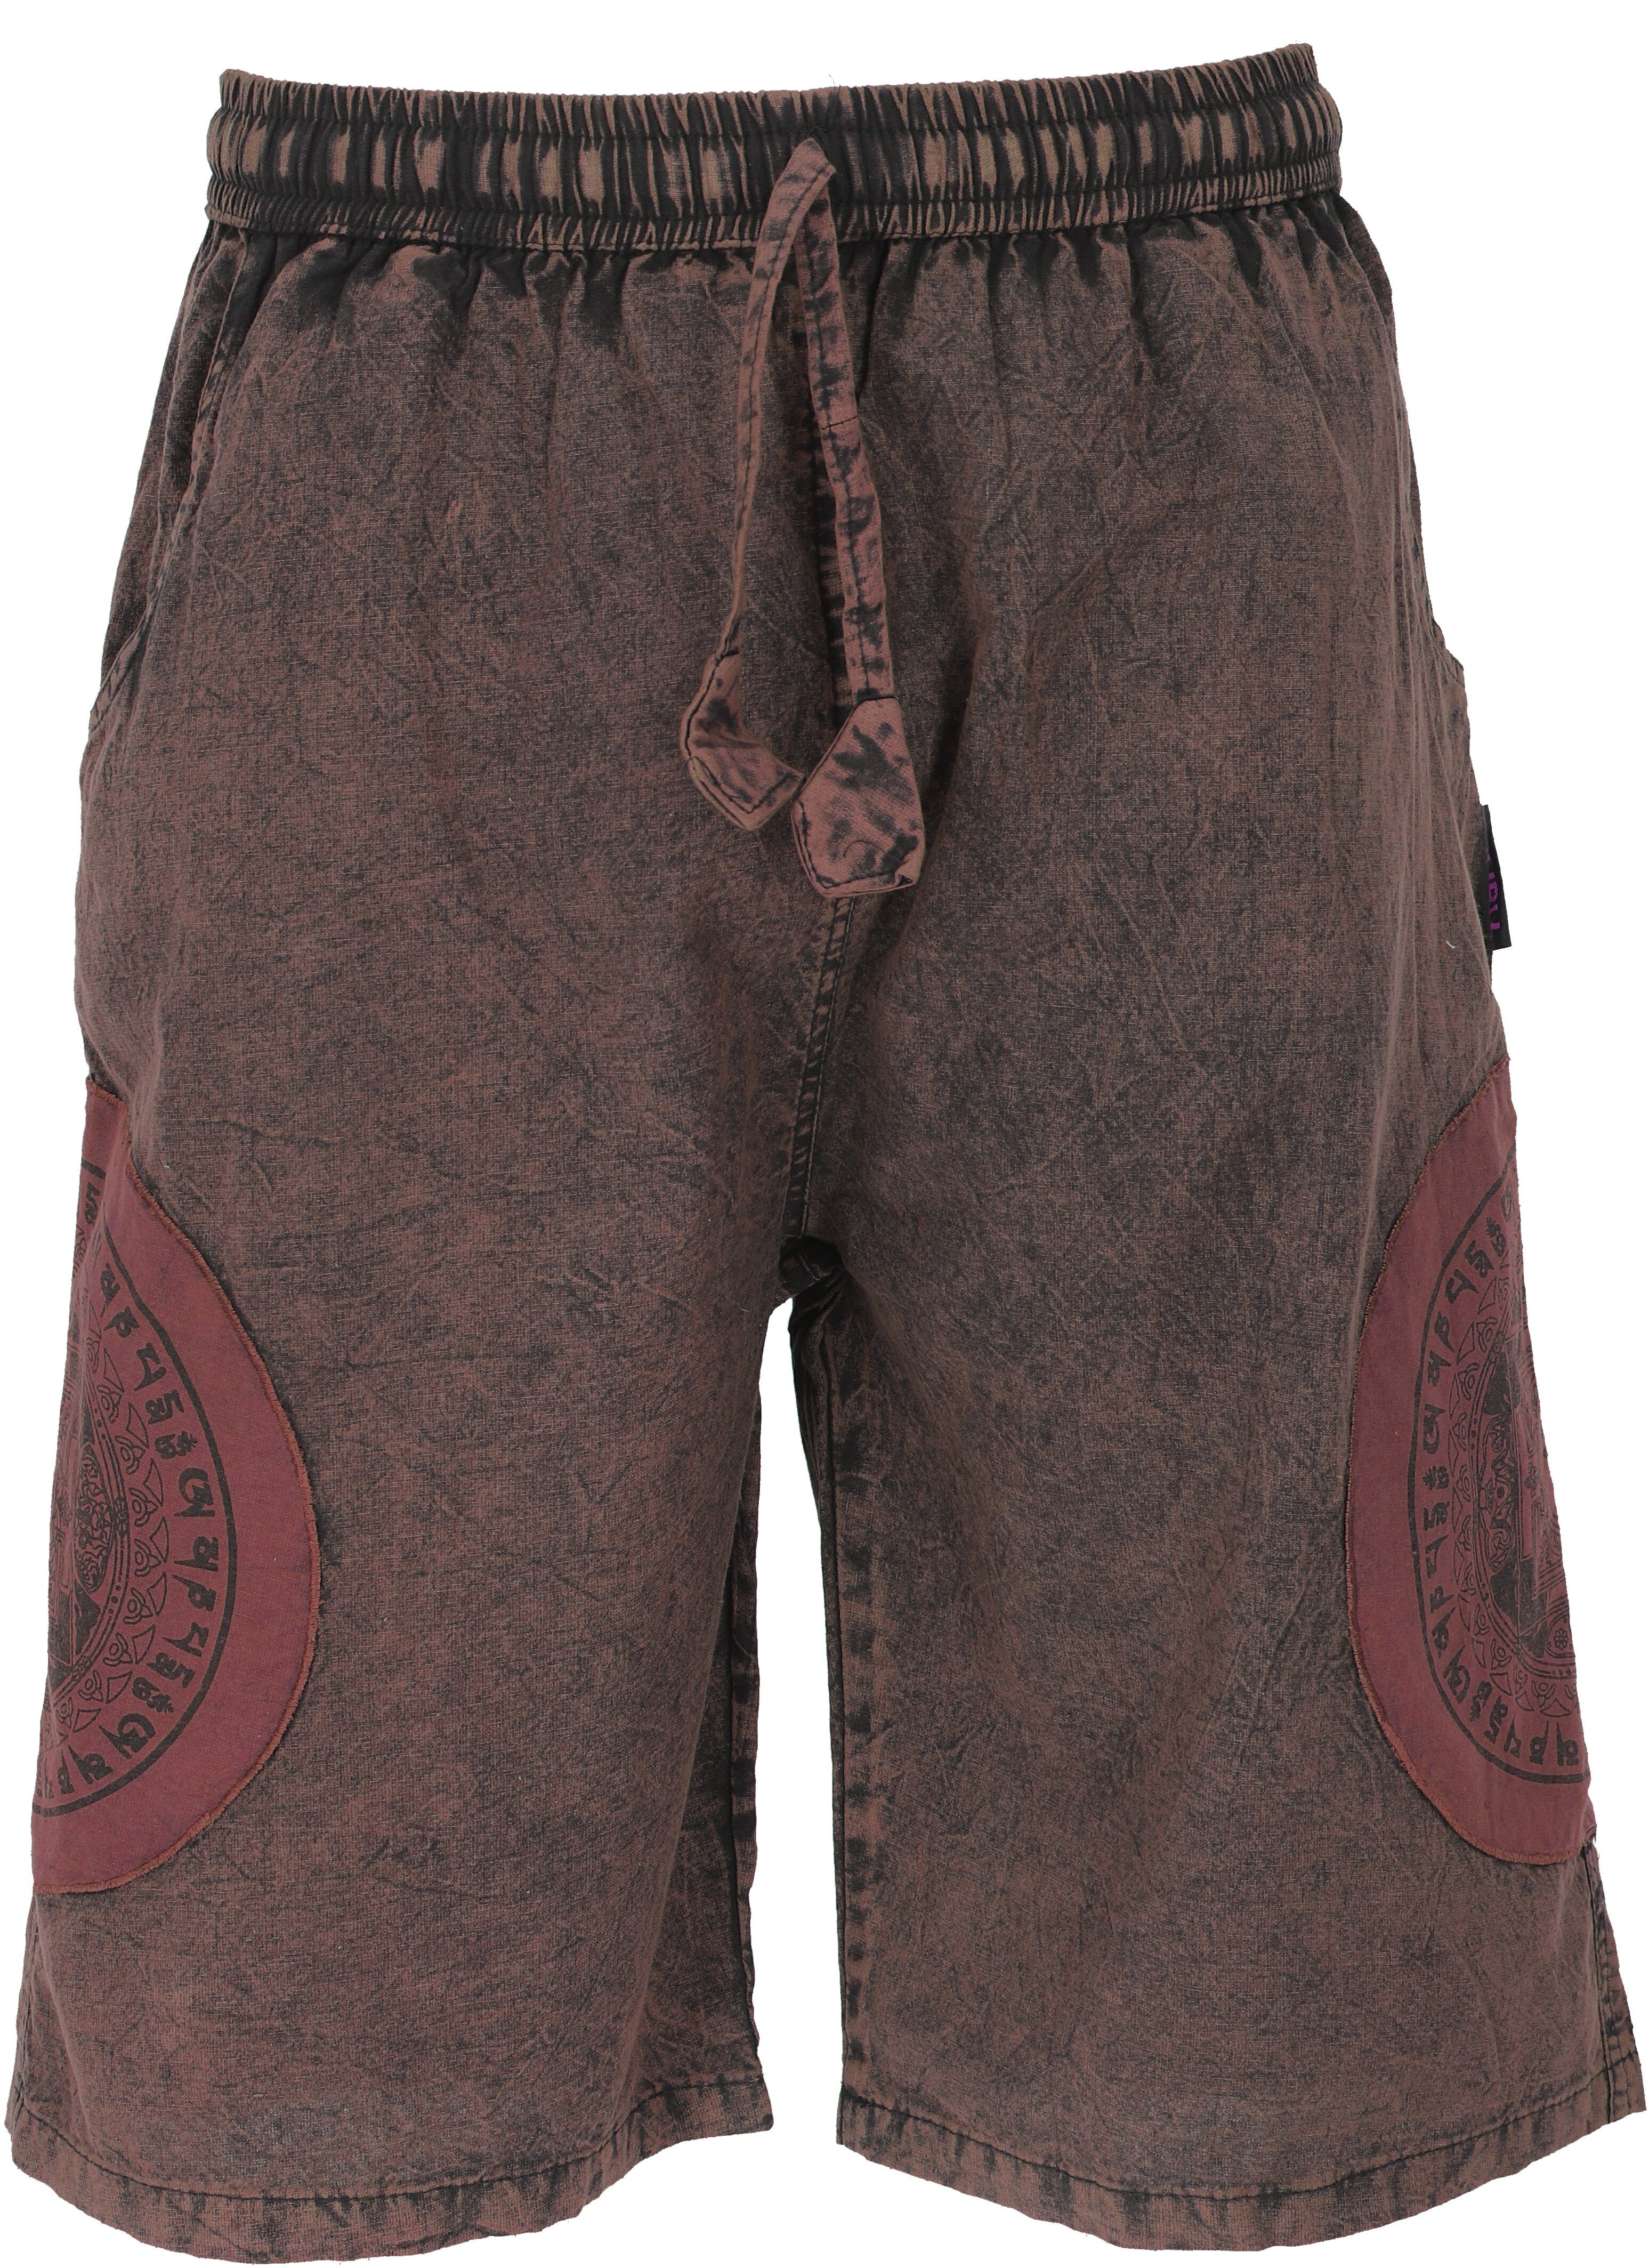 Guru-Shop Relaxhose Ethno Yogashorts, Stonwasch Patchwork Shorts.. Hippie, Ethno Style, alternative Bekleidung braun